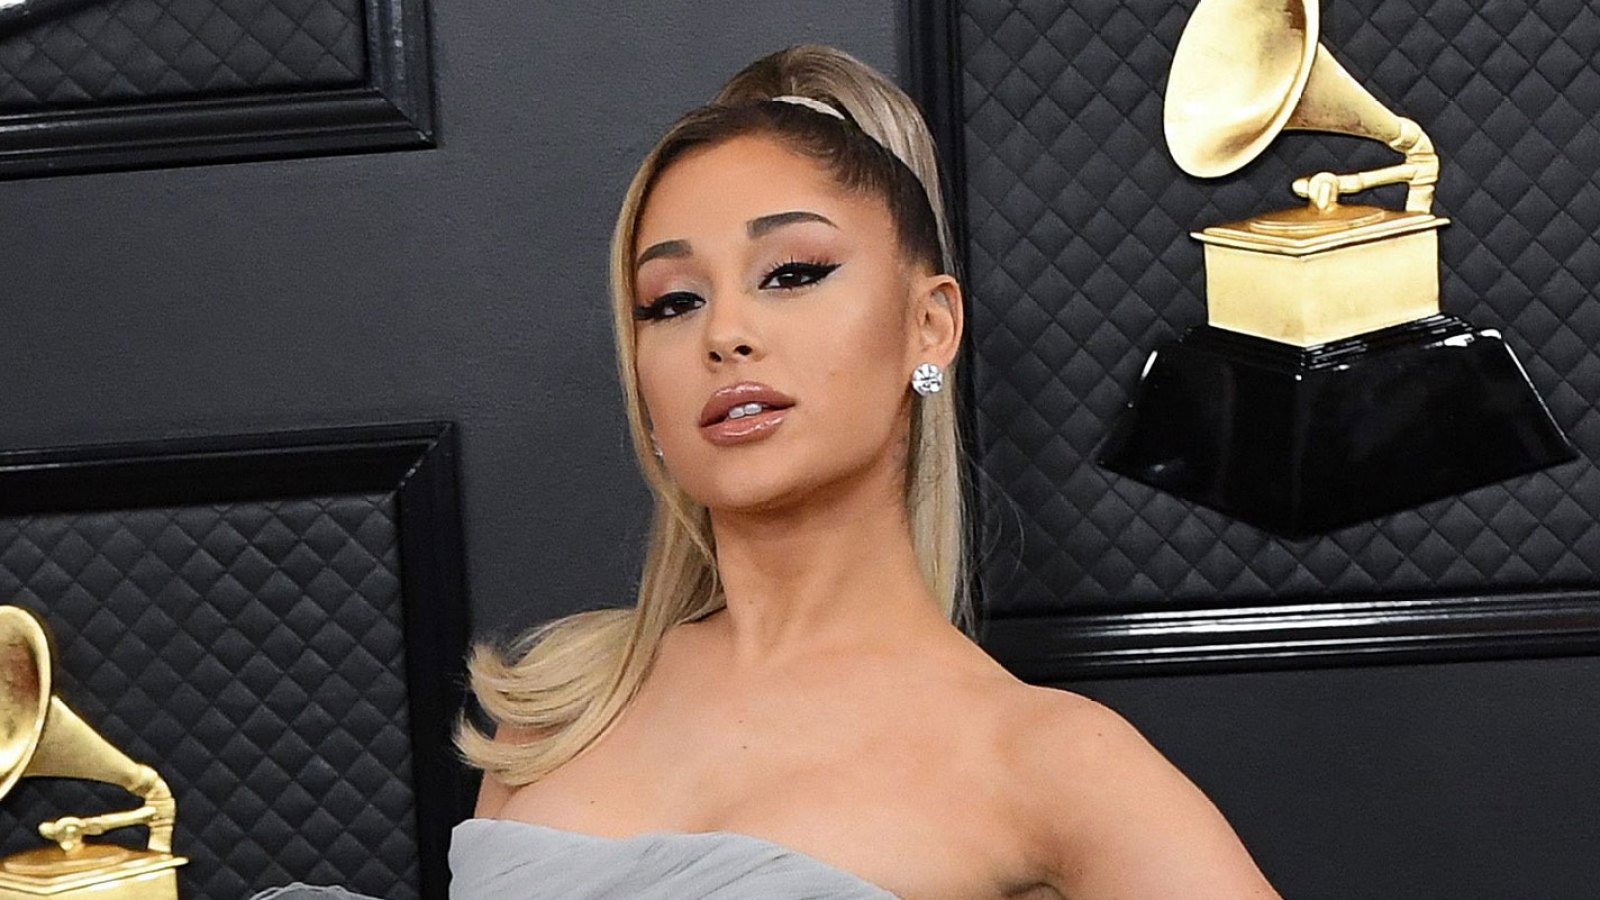 Look Alike Ariana Grande Porn Captions - Grammys 2022: Ariana Grande Skips Awards Show Amid 3 Nominations